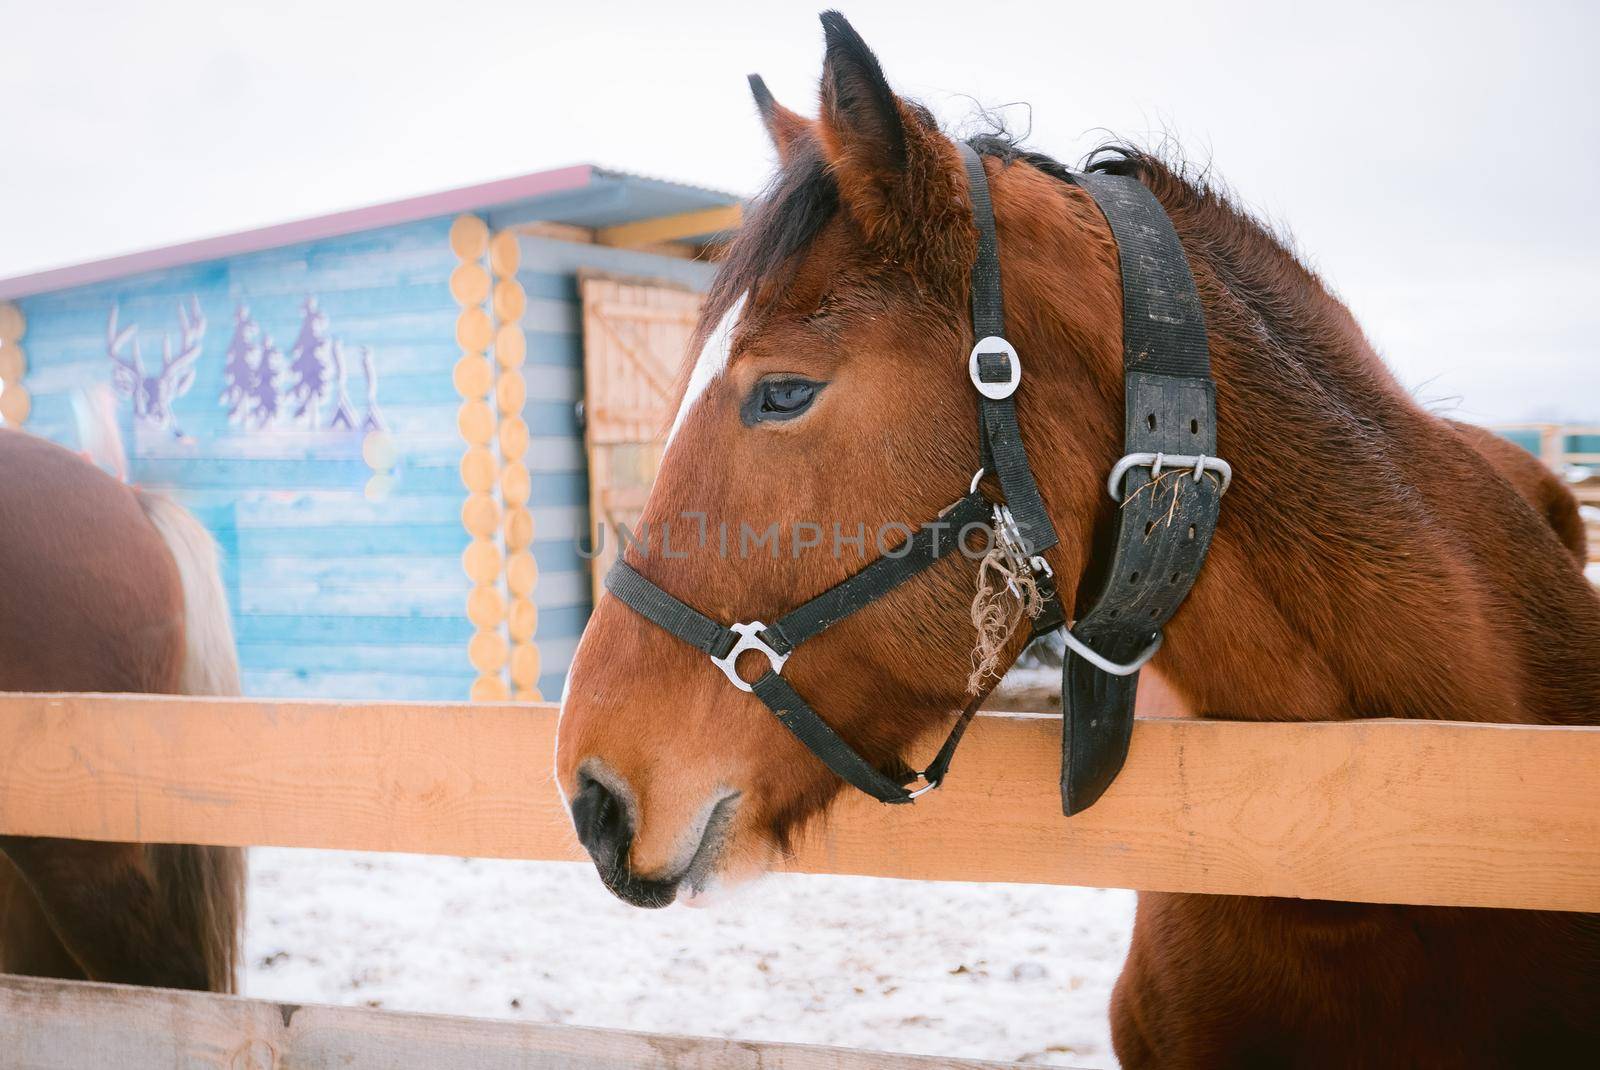 Horse at horse paddock during winter season